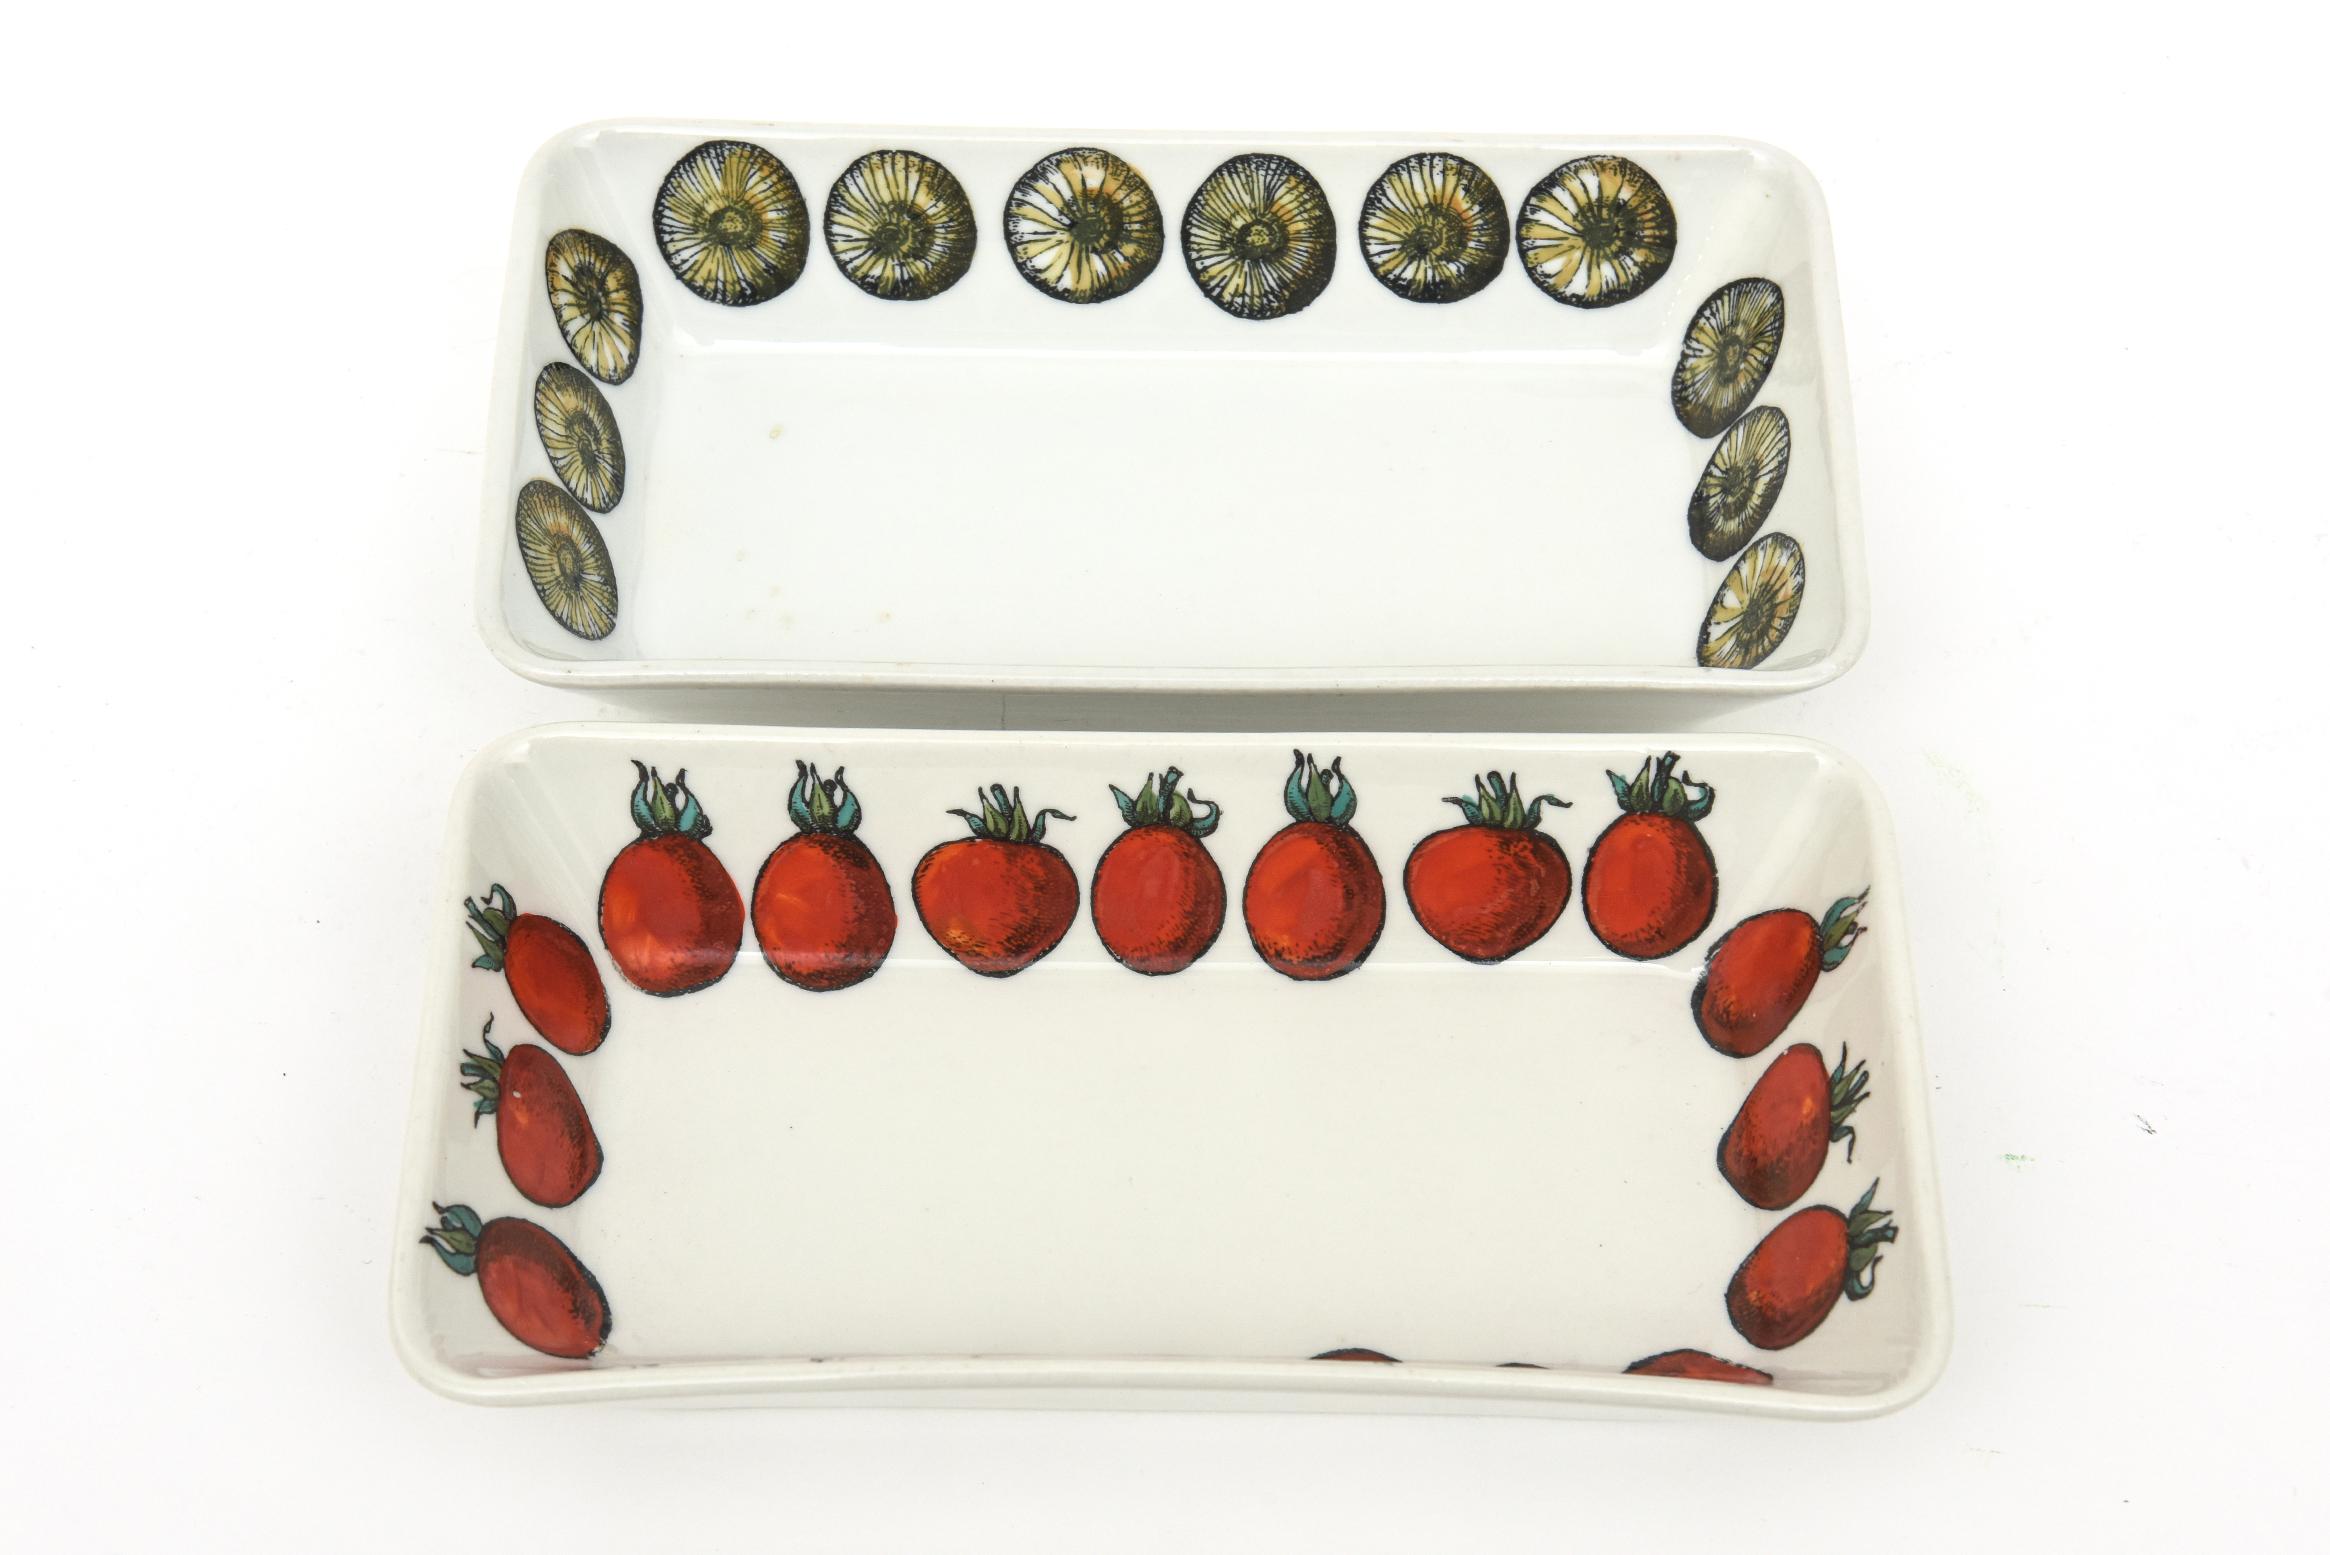 Dieses Paar fabelhafte und schwer zu finden Vintage 1960's gepunzt Piero Fornasetti Porzellan rechteckige Schalen servieren, Vorspeise Gerichte haben Hand gemalt Gemüse oder Früchte rund um den inneren Umfang. Diese sind obskur, selten und höchst